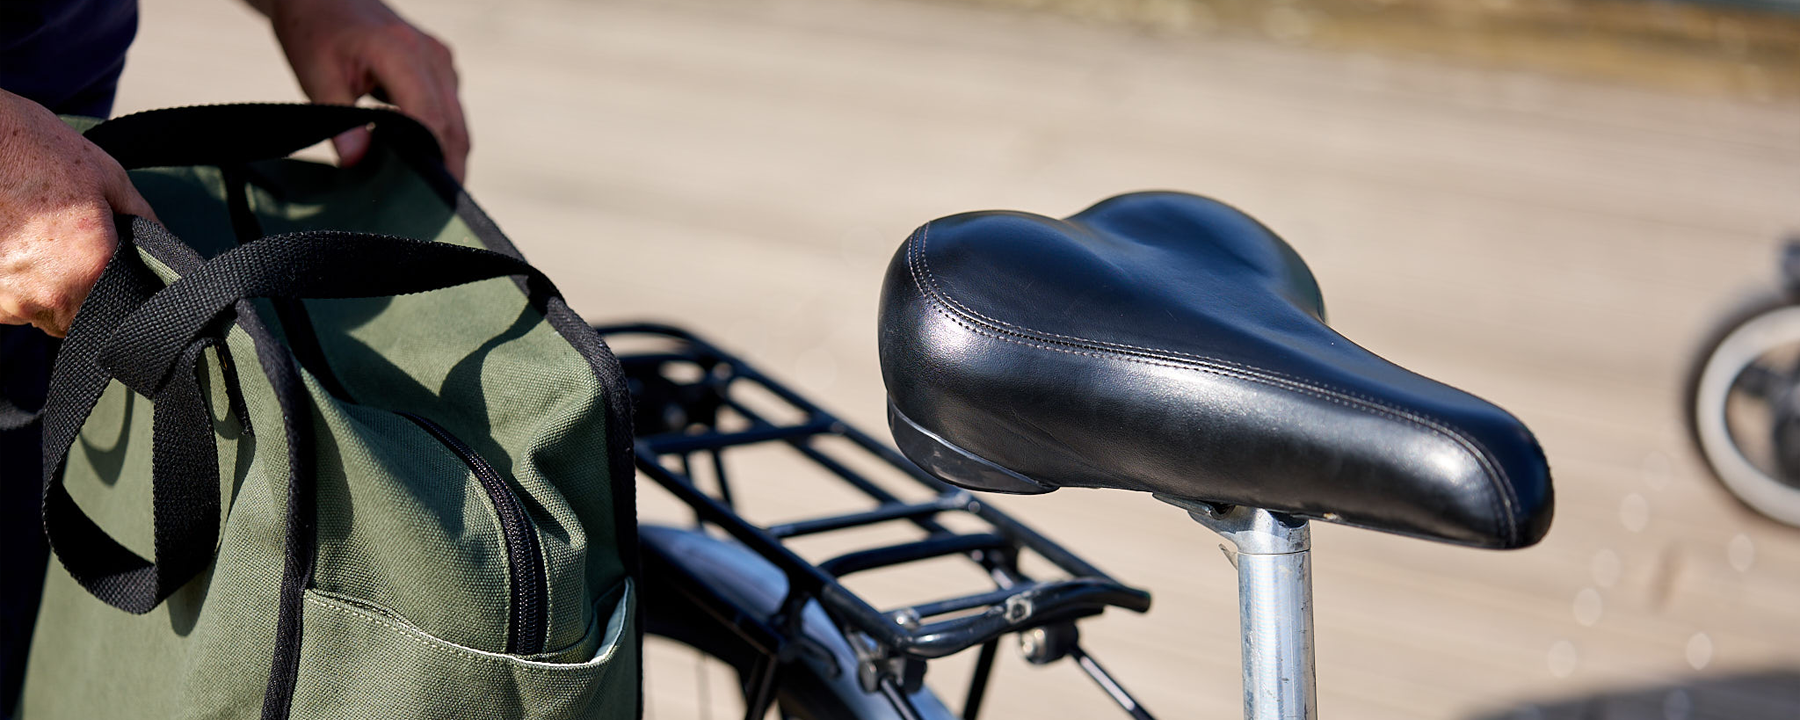 introducing: badawin bike bags